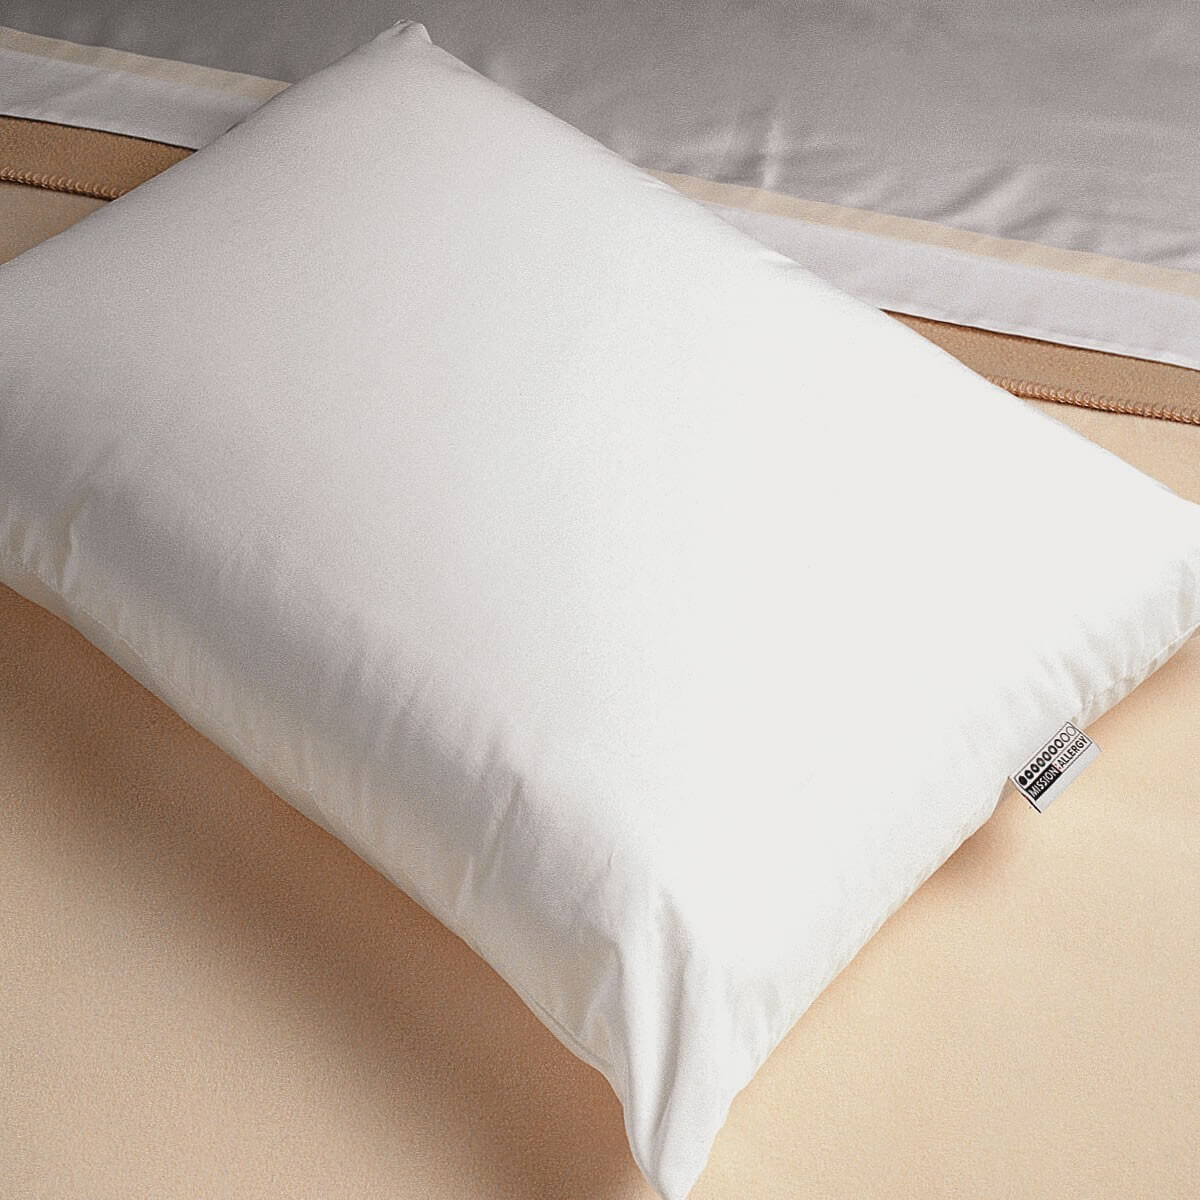 Allergen-Proof Pillows - ComfortFill